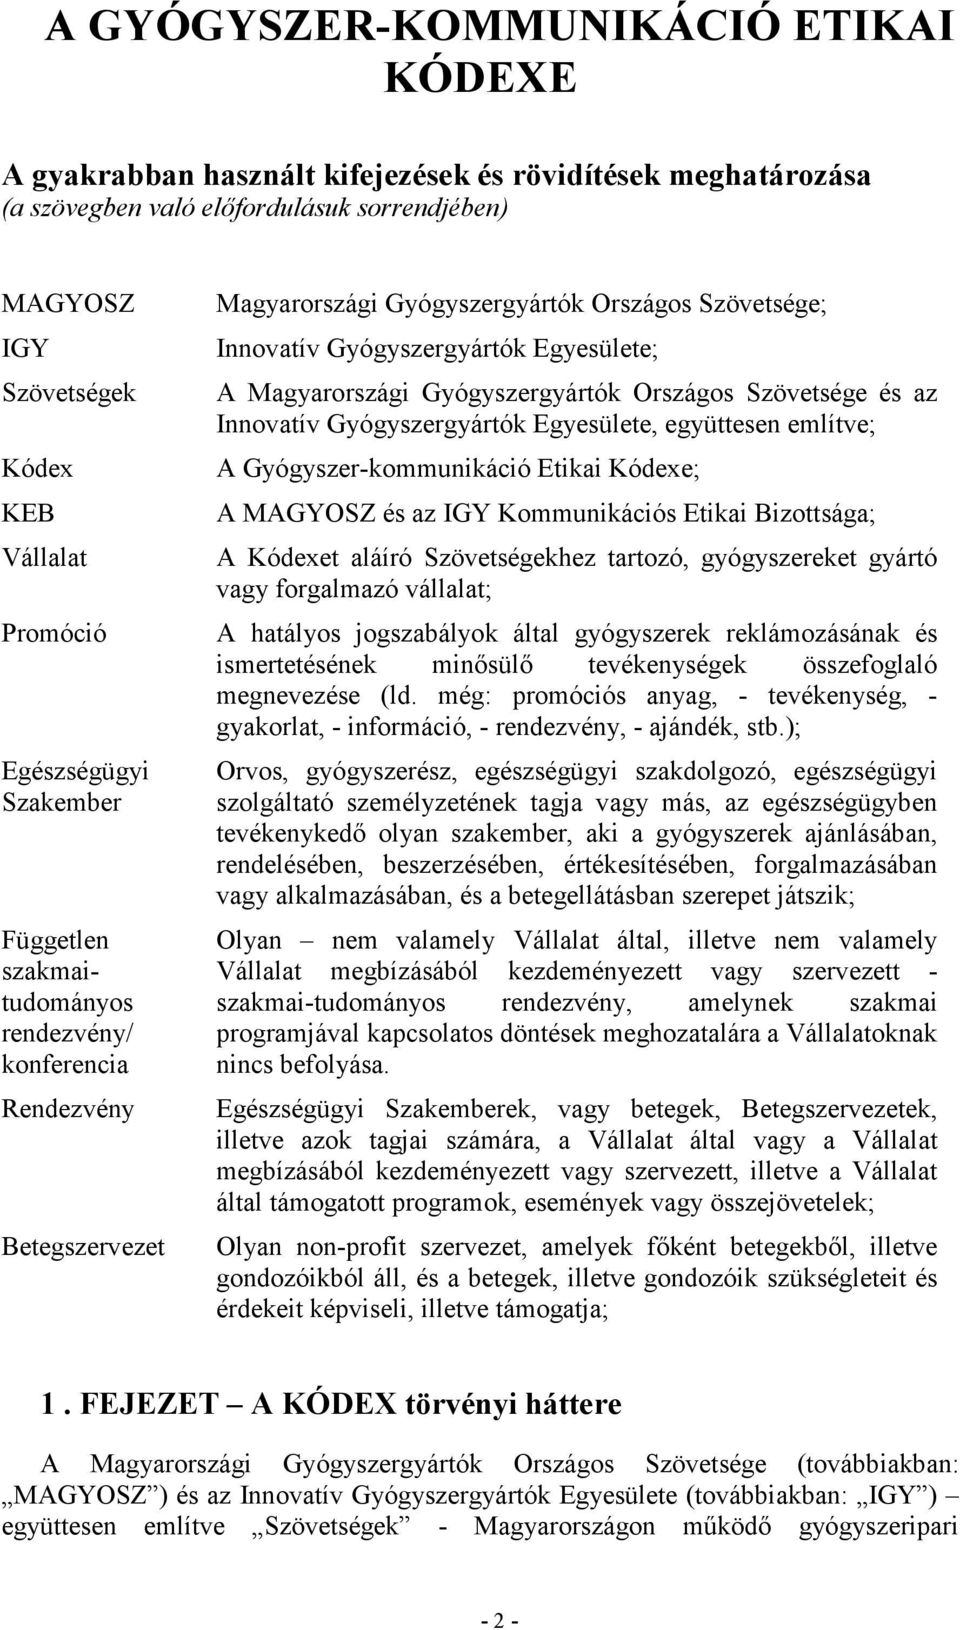 Magyarországi Gyógyszergyártók Országos Szövetsége és az Innovatív Gyógyszergyártók Egyesülete, együttesen említve; A Gyógyszer-kommunikáció Etikai Kódexe; A MAGYOSZ és az IGY Kommunikációs Etikai